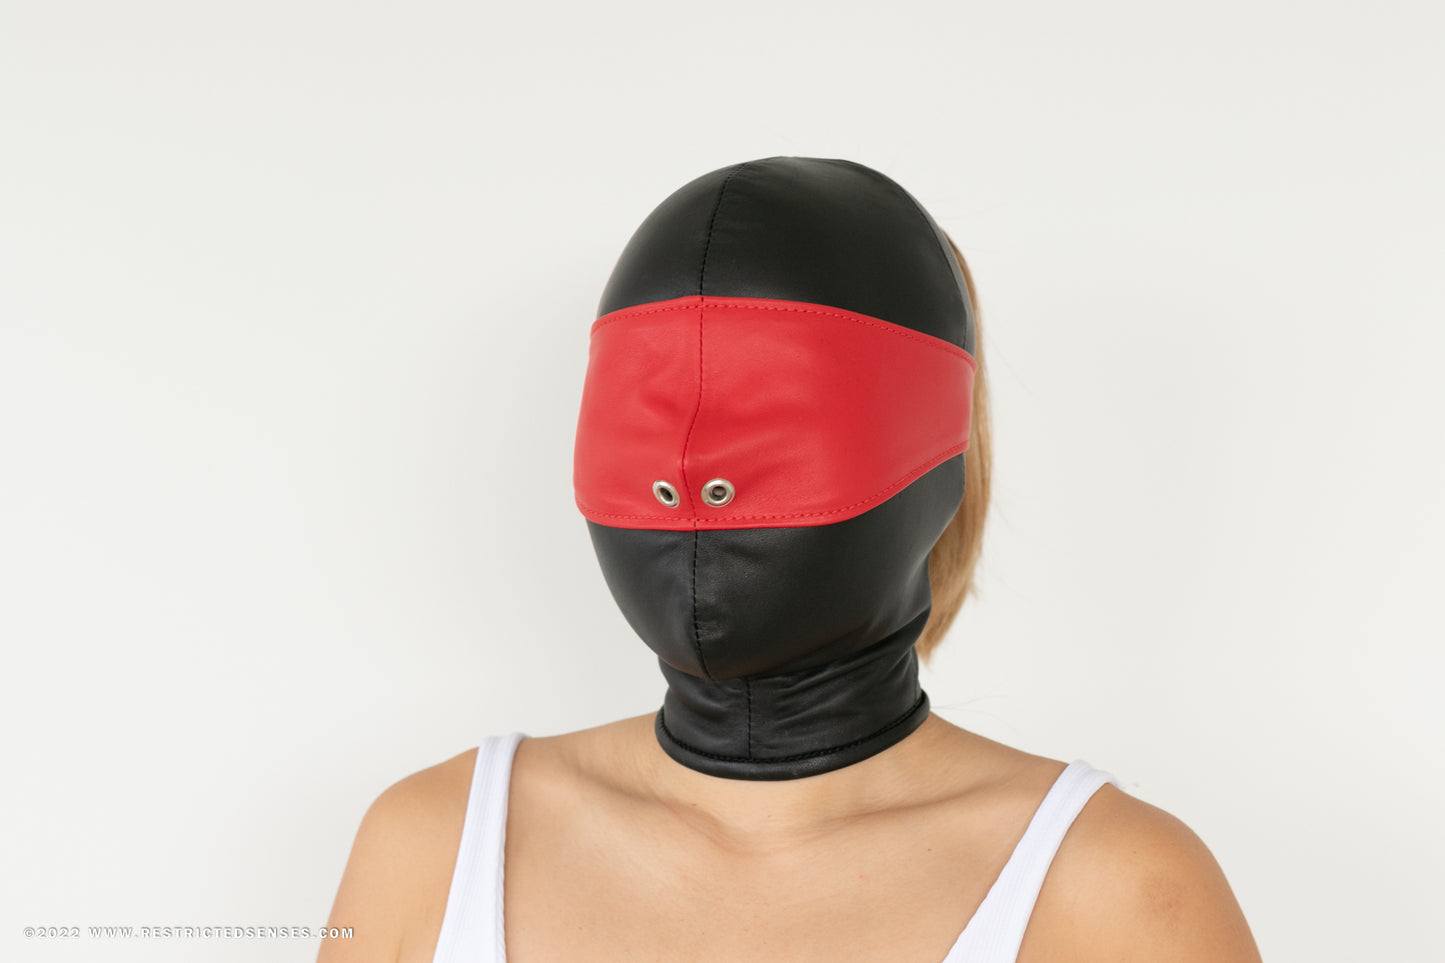 Leather Bondage Face Cover Blindfold